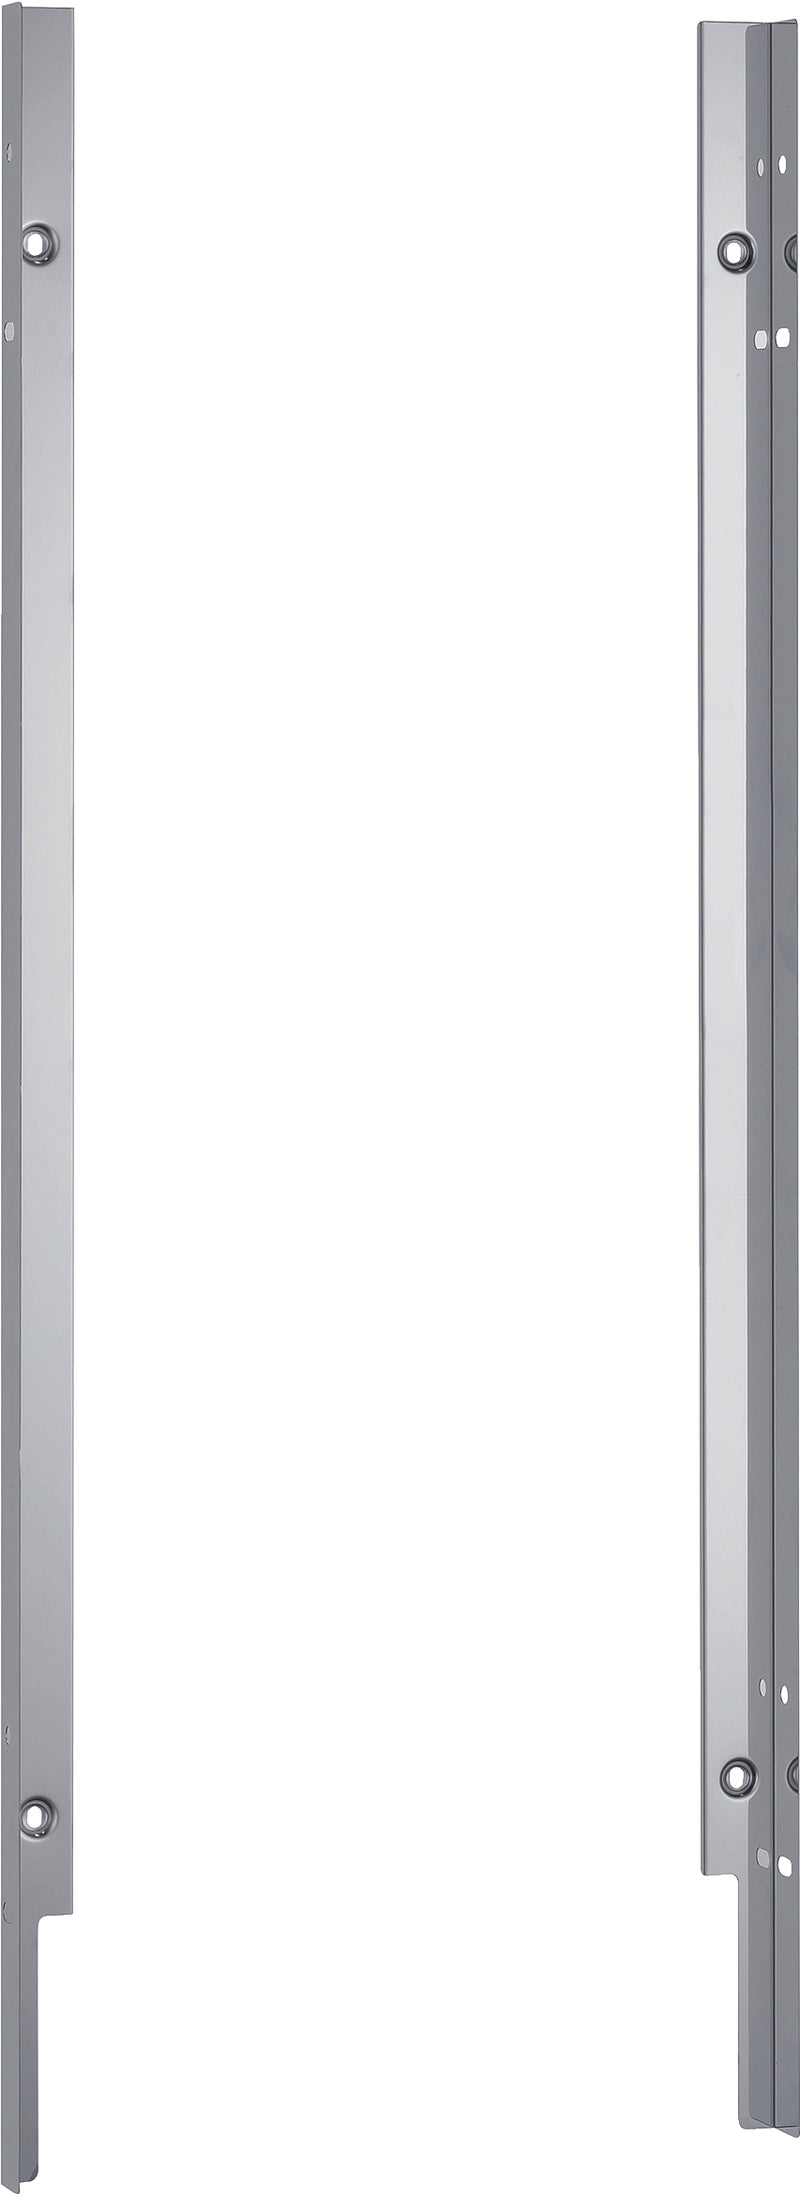 SIEMENS Verblendungsleisten Edelstahl(81,5 cm) für Geräte mit Edelstahlboden